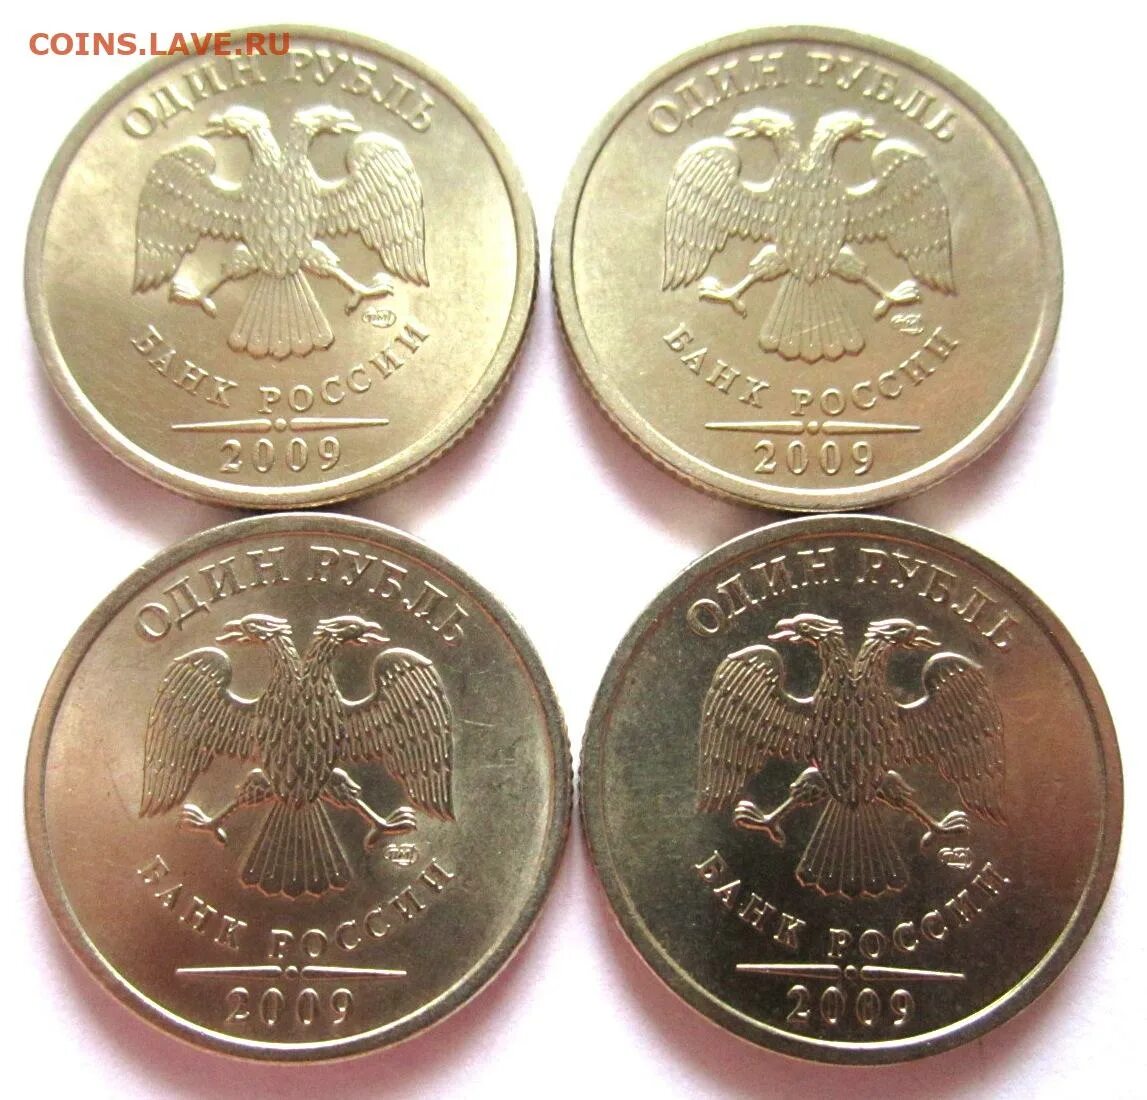 Монета 12 5 рублей. 12.5 Рублей монета. 31 Монетка. Золотая монета 31.01 грамм 2001 год крыса. Монеты 31 мм купить.